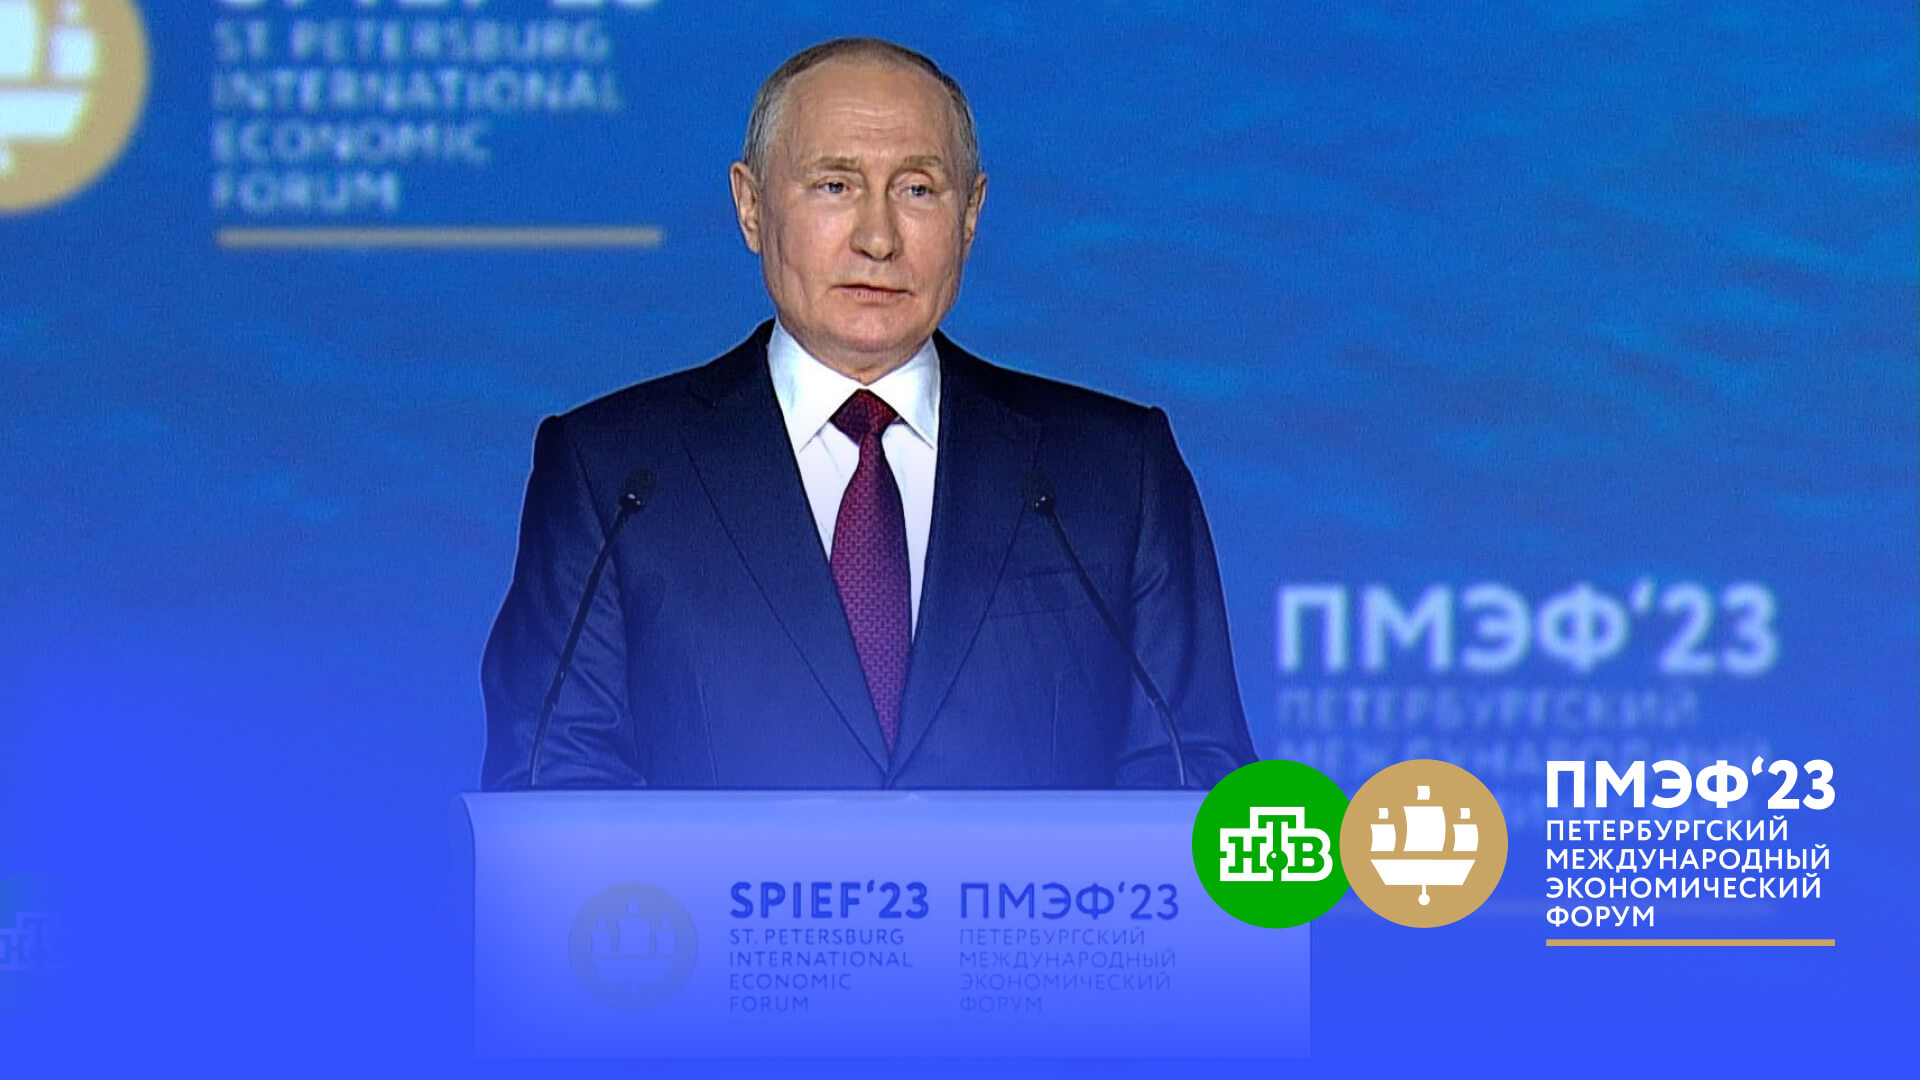 Путин: стратегия, выбранная в 2022 году властями и бизнесом, сработала